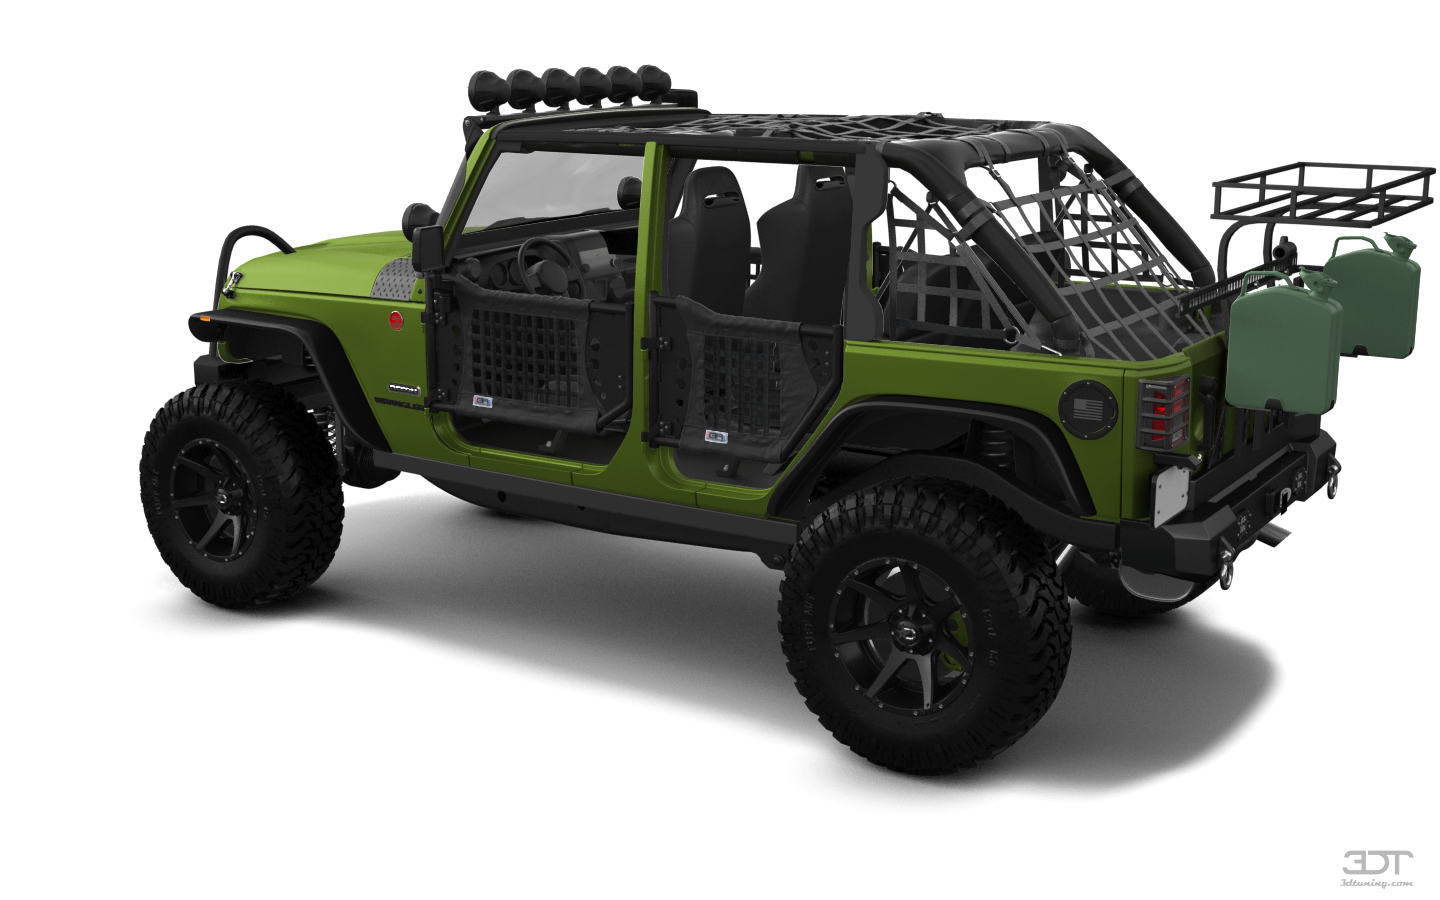 Jeep Wrangler Unlimited JK Rubicon Recon 4 Door SUV 2017 tuning